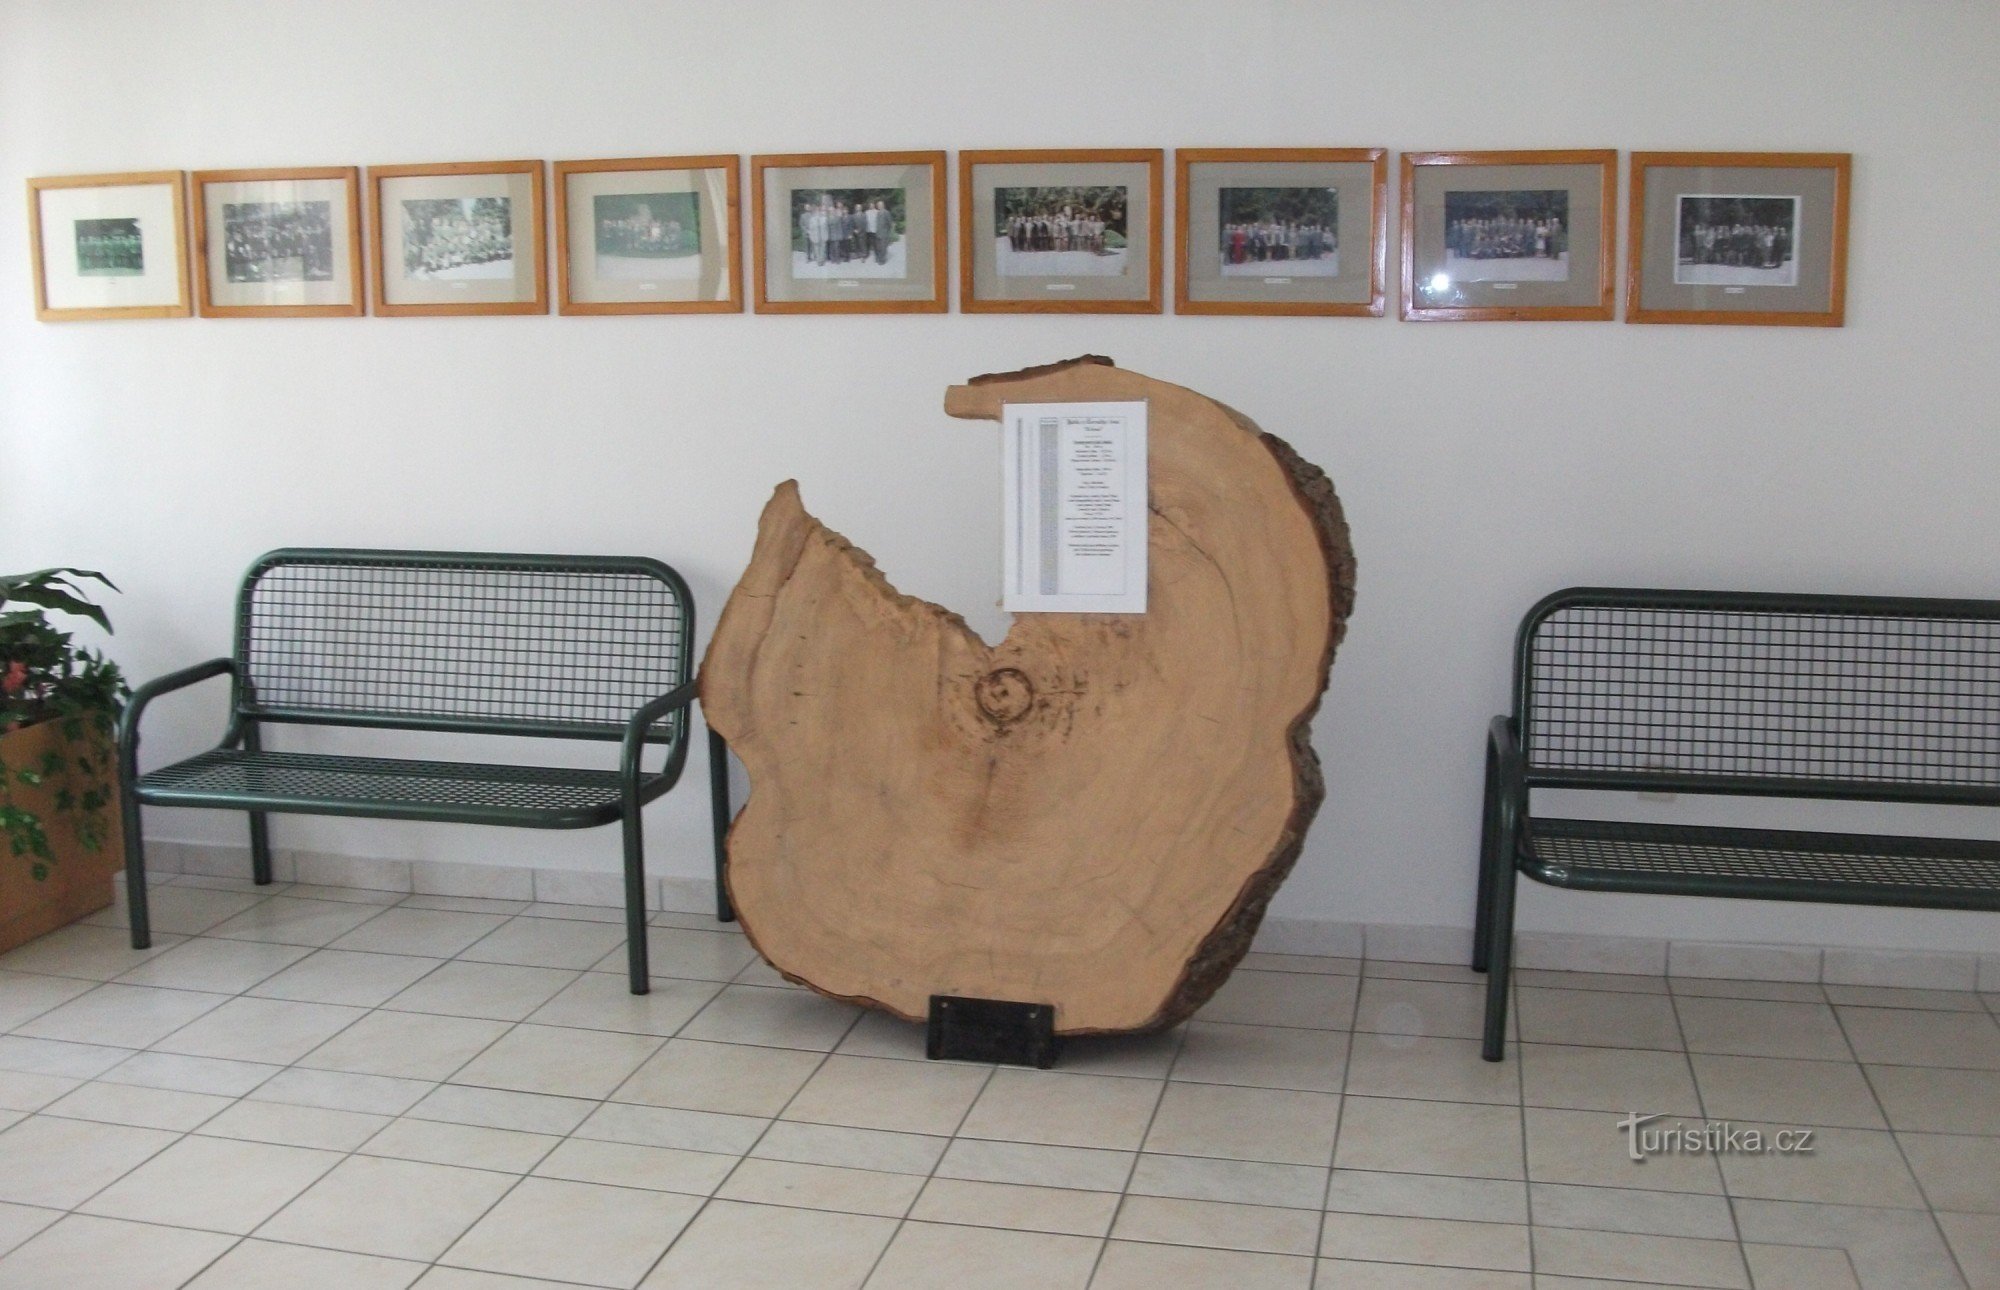 Dans le couloir, les étudiants peuvent également rencontrer ce spécimen unique d'arbre